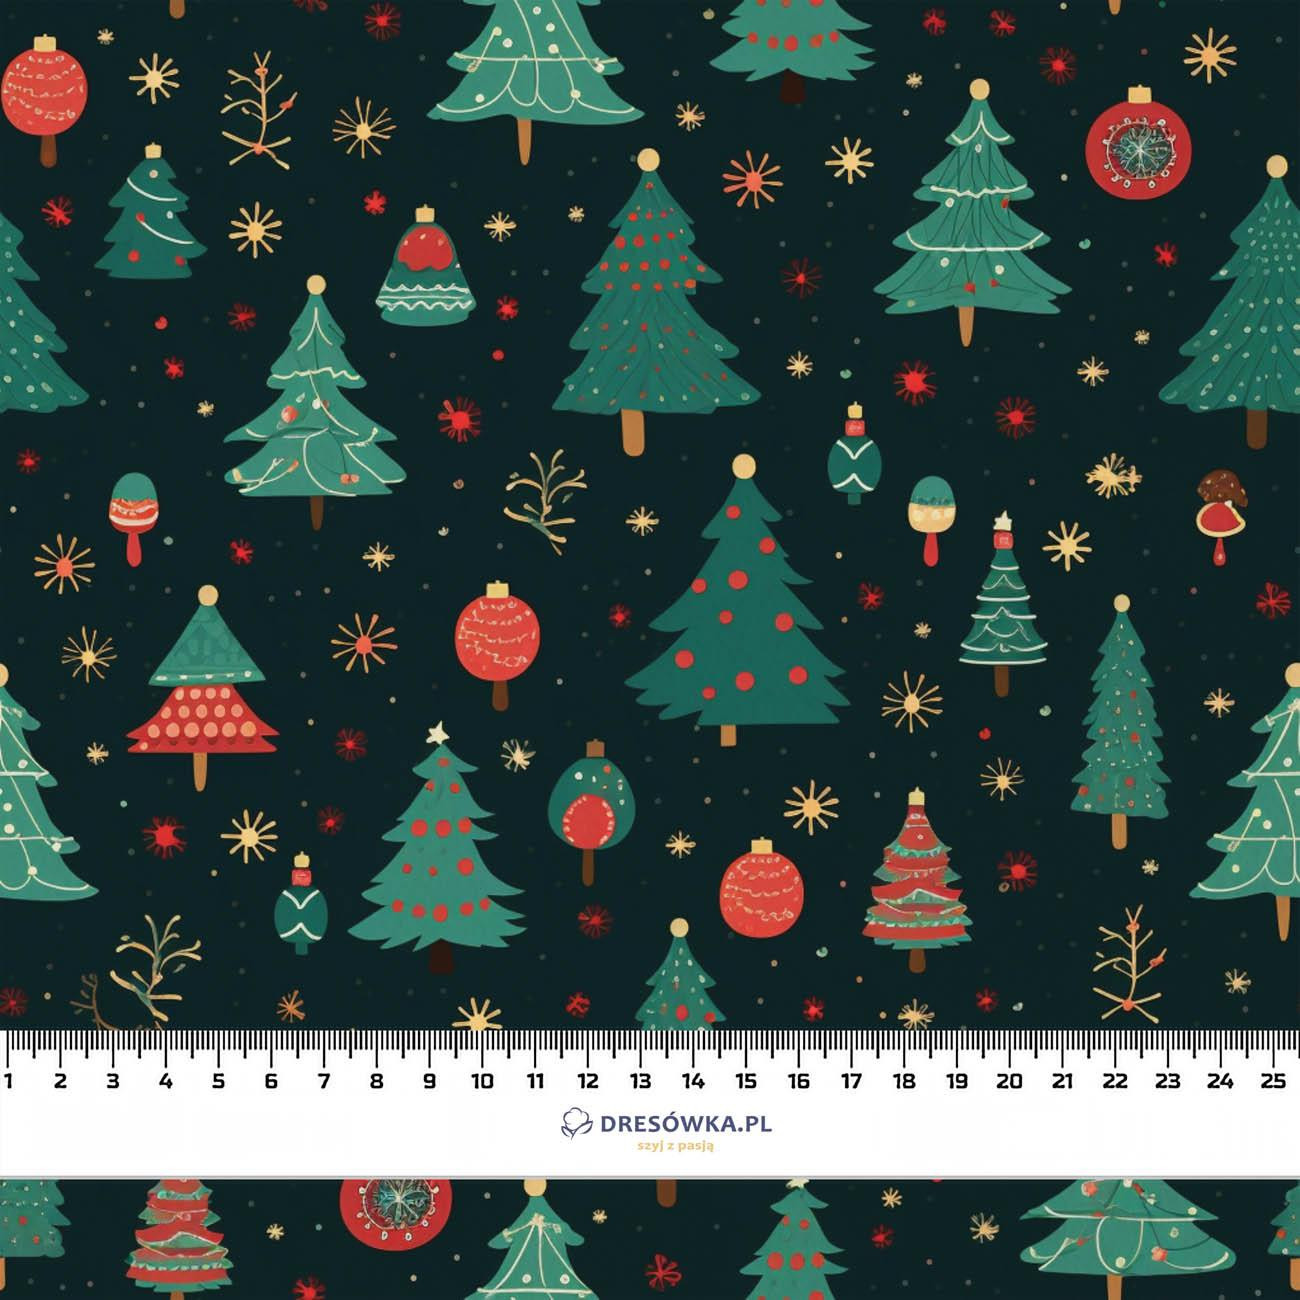 CHRISTMAS TREE M. 1 - Softshell 